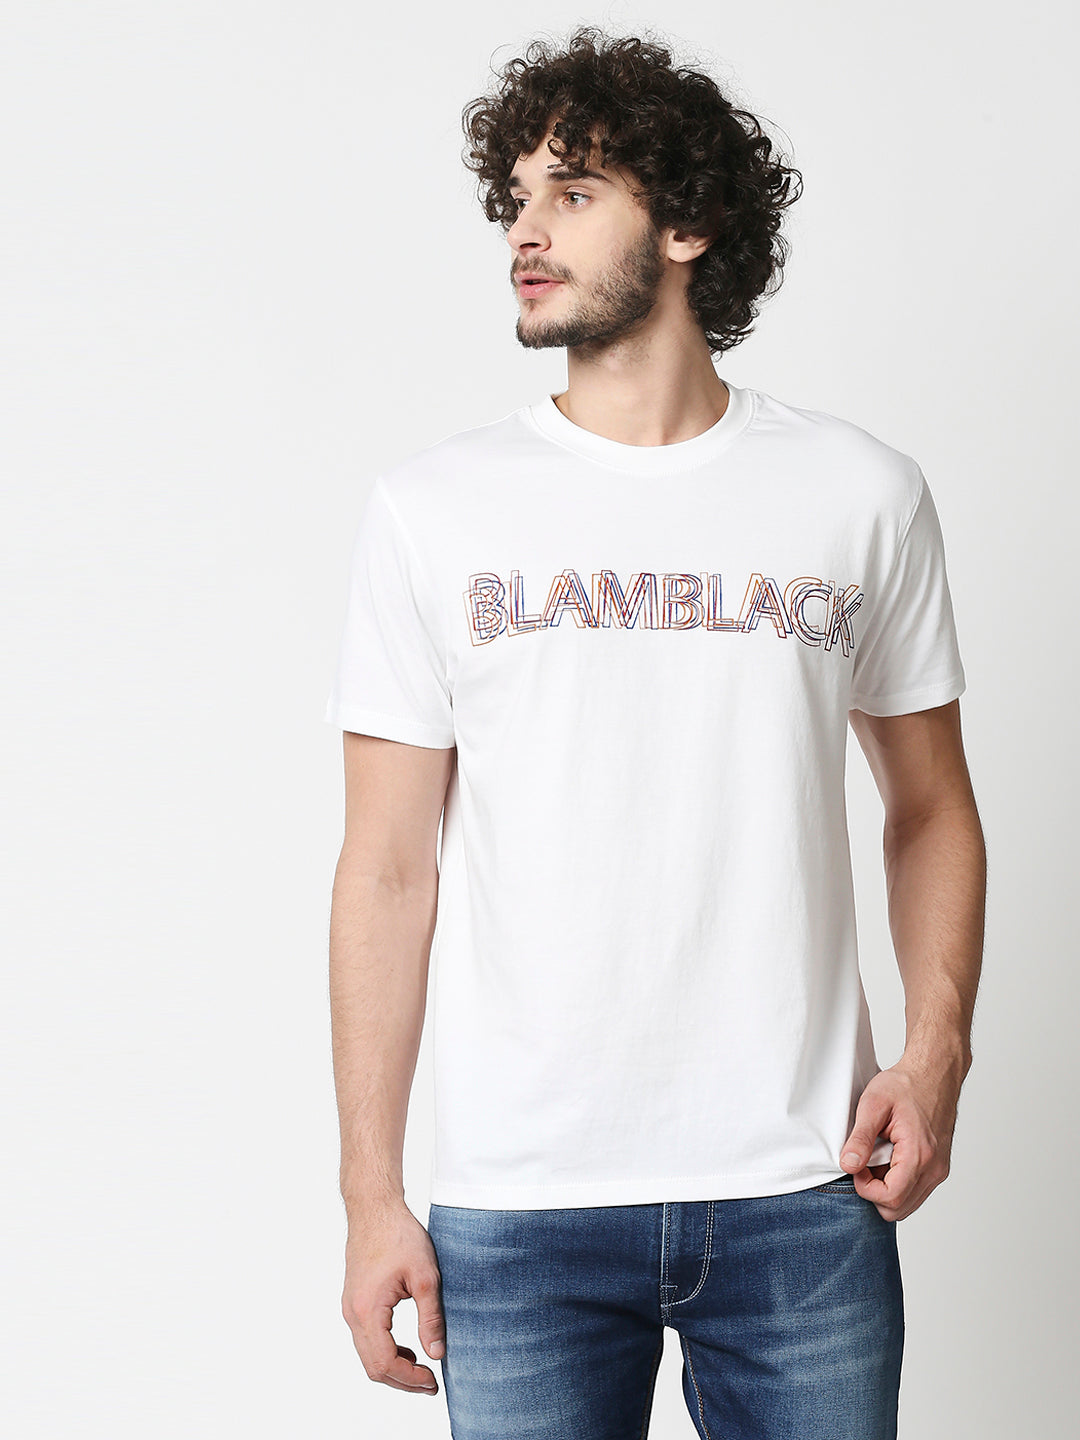 Buy Men's Regular fit White chest print T-shirt.